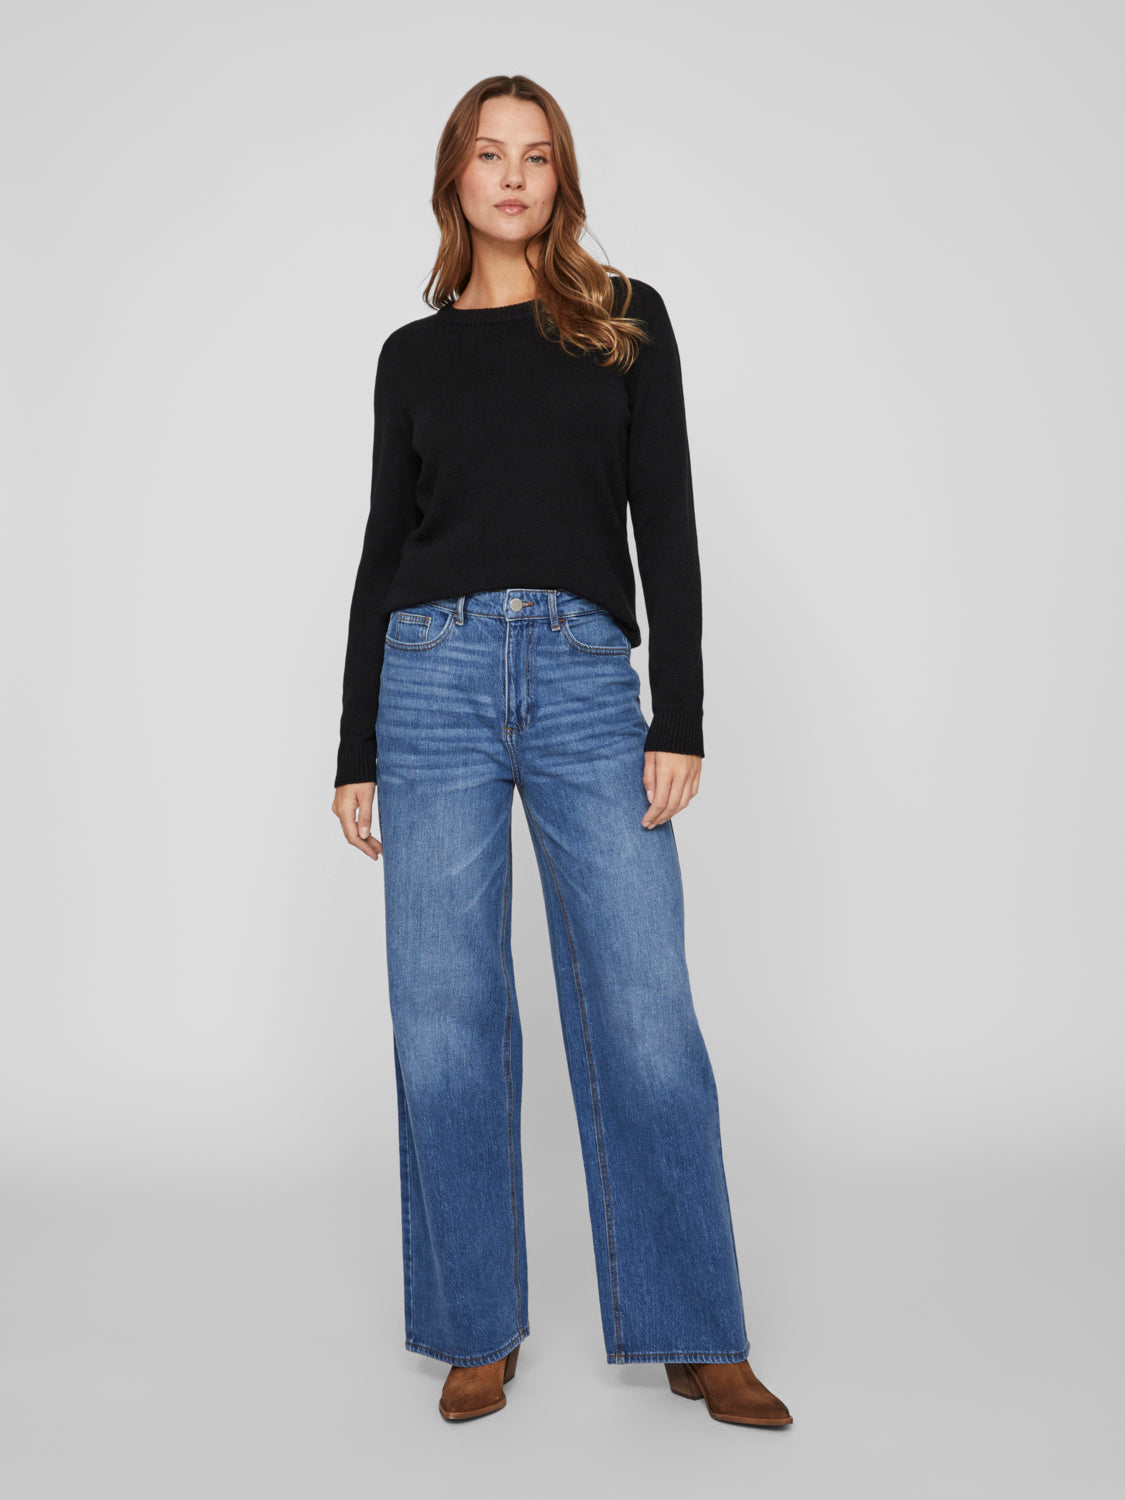 VIFREYA Jeans - Medium Blue Denim